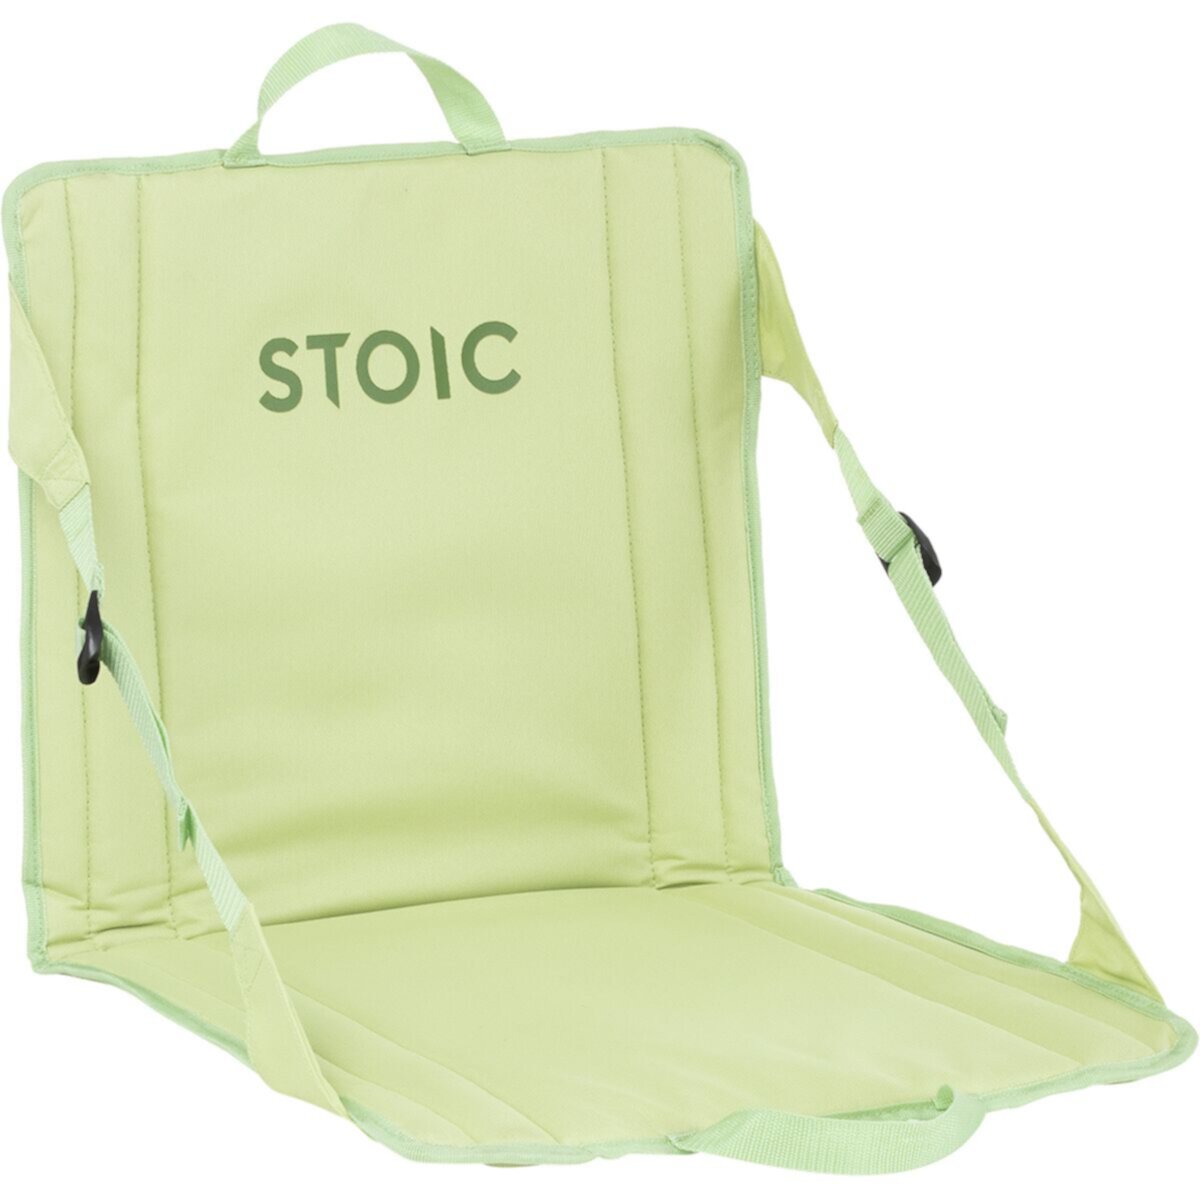 Portable Chair Stoic